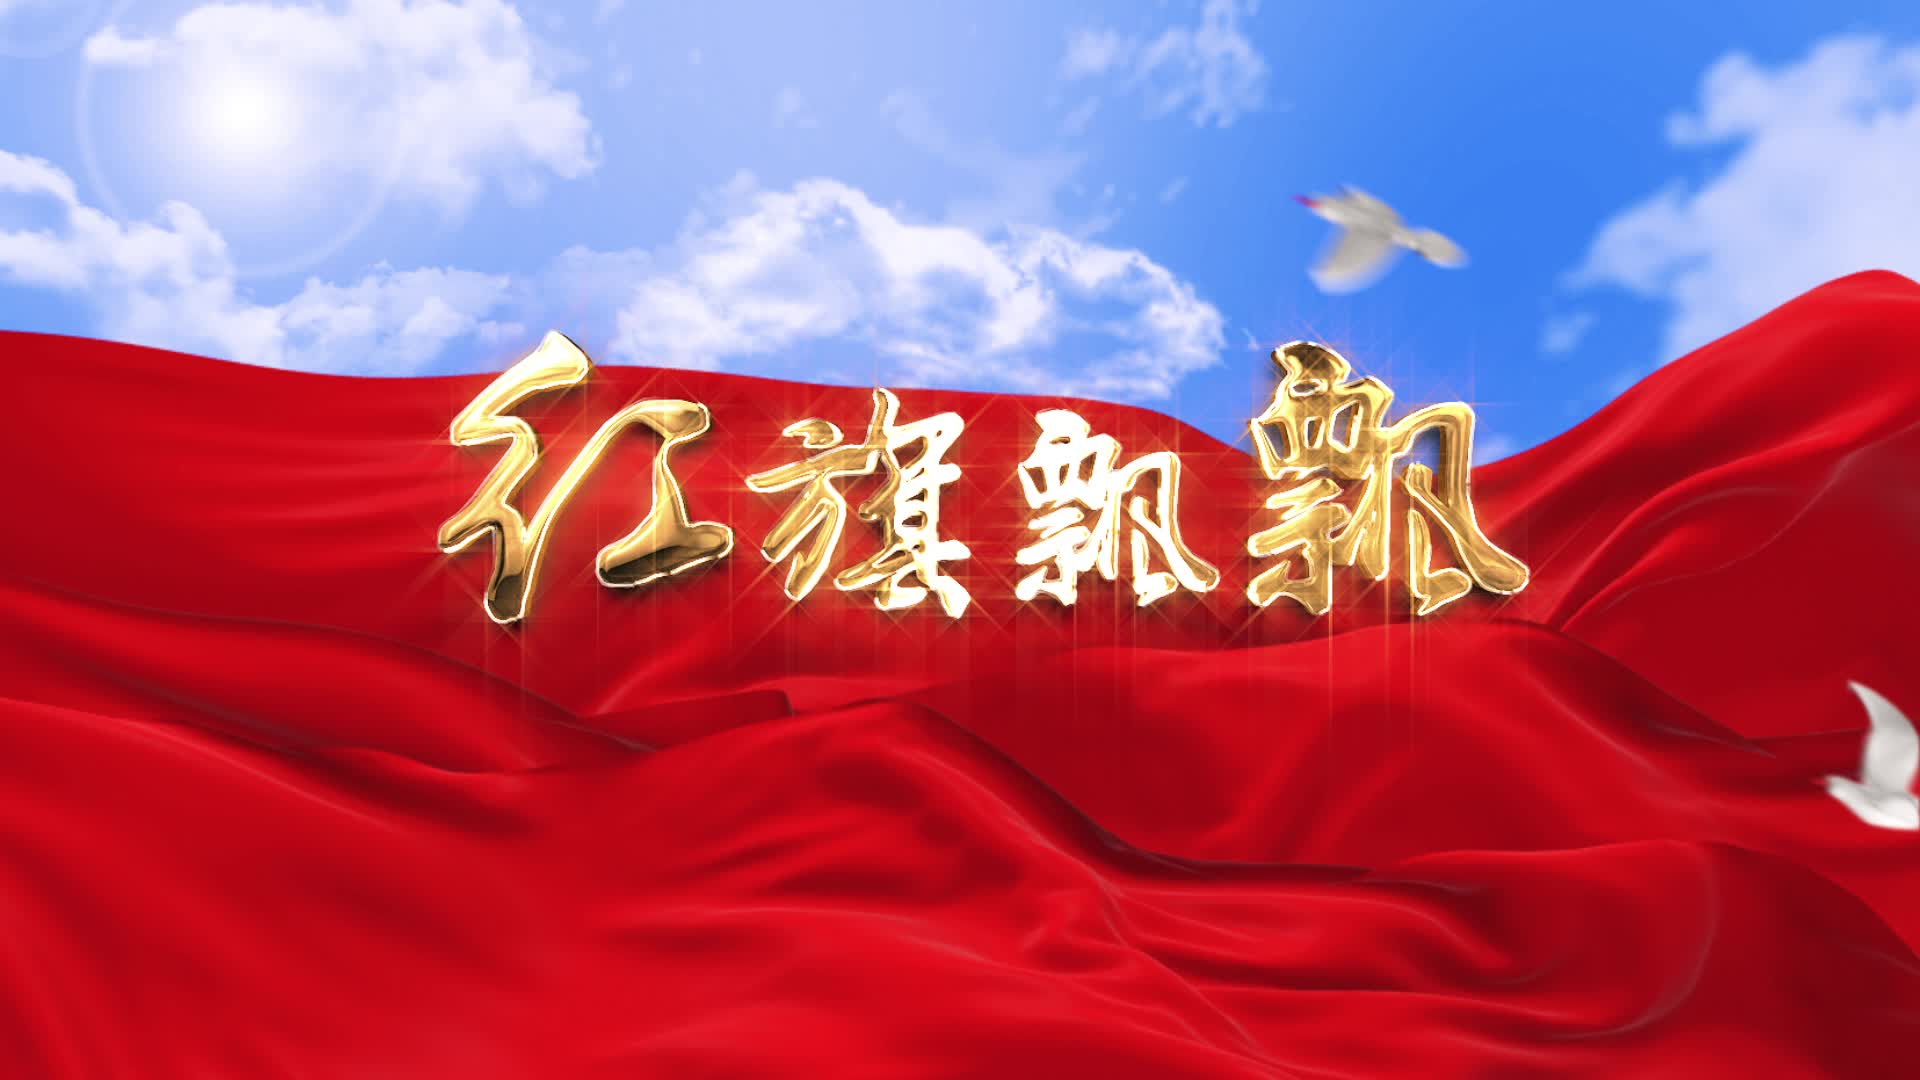 红歌歌曲红旗飘飘led演出大屏视频背景